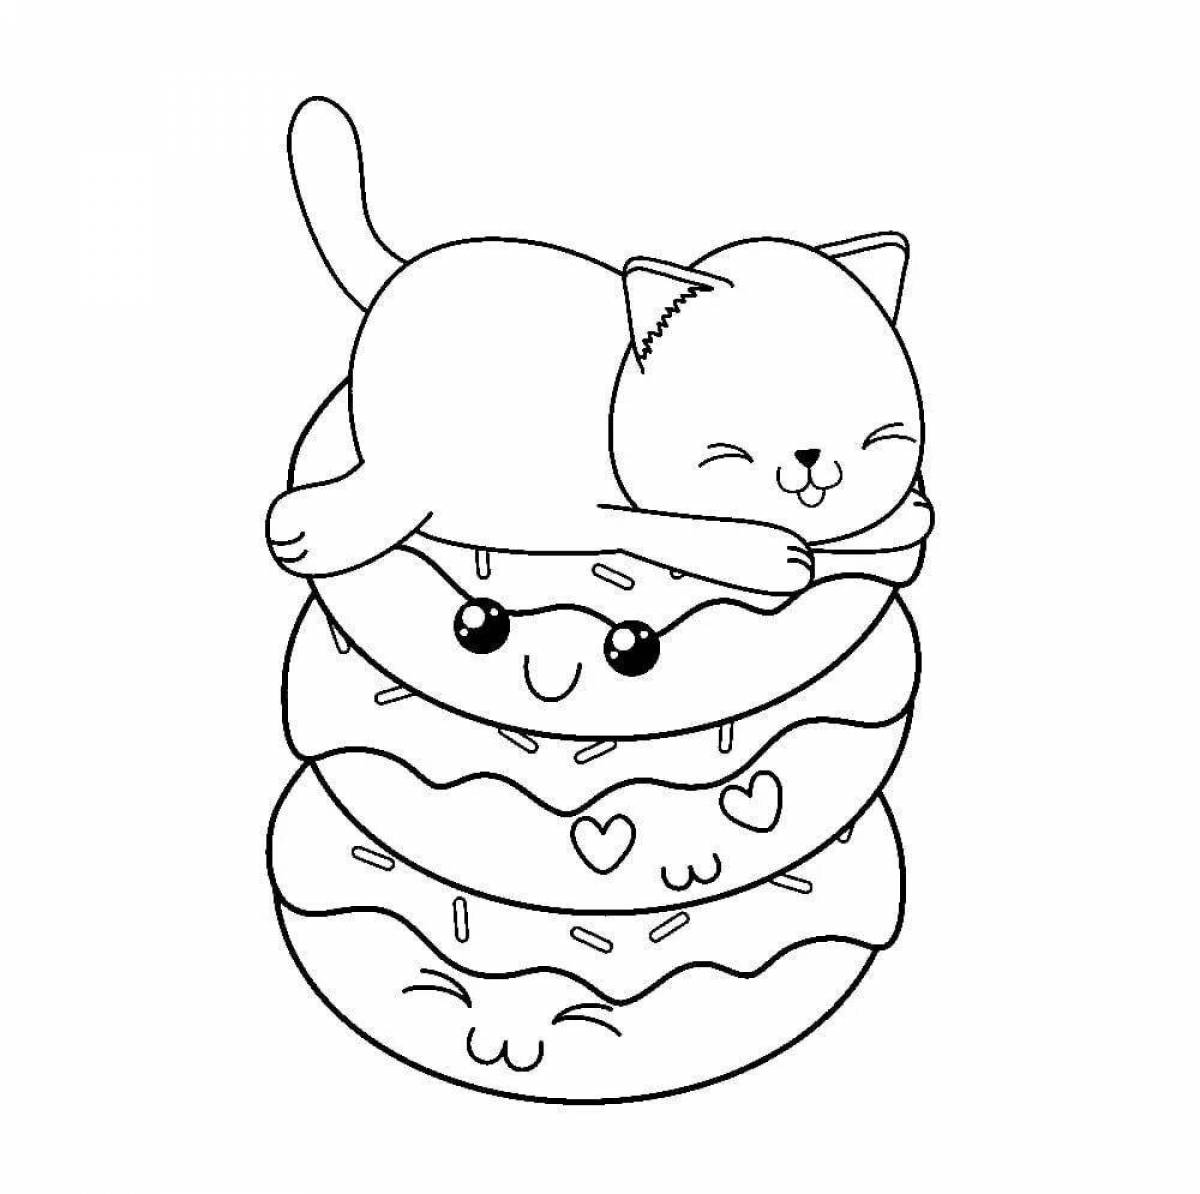 Coloring cute cat sausage